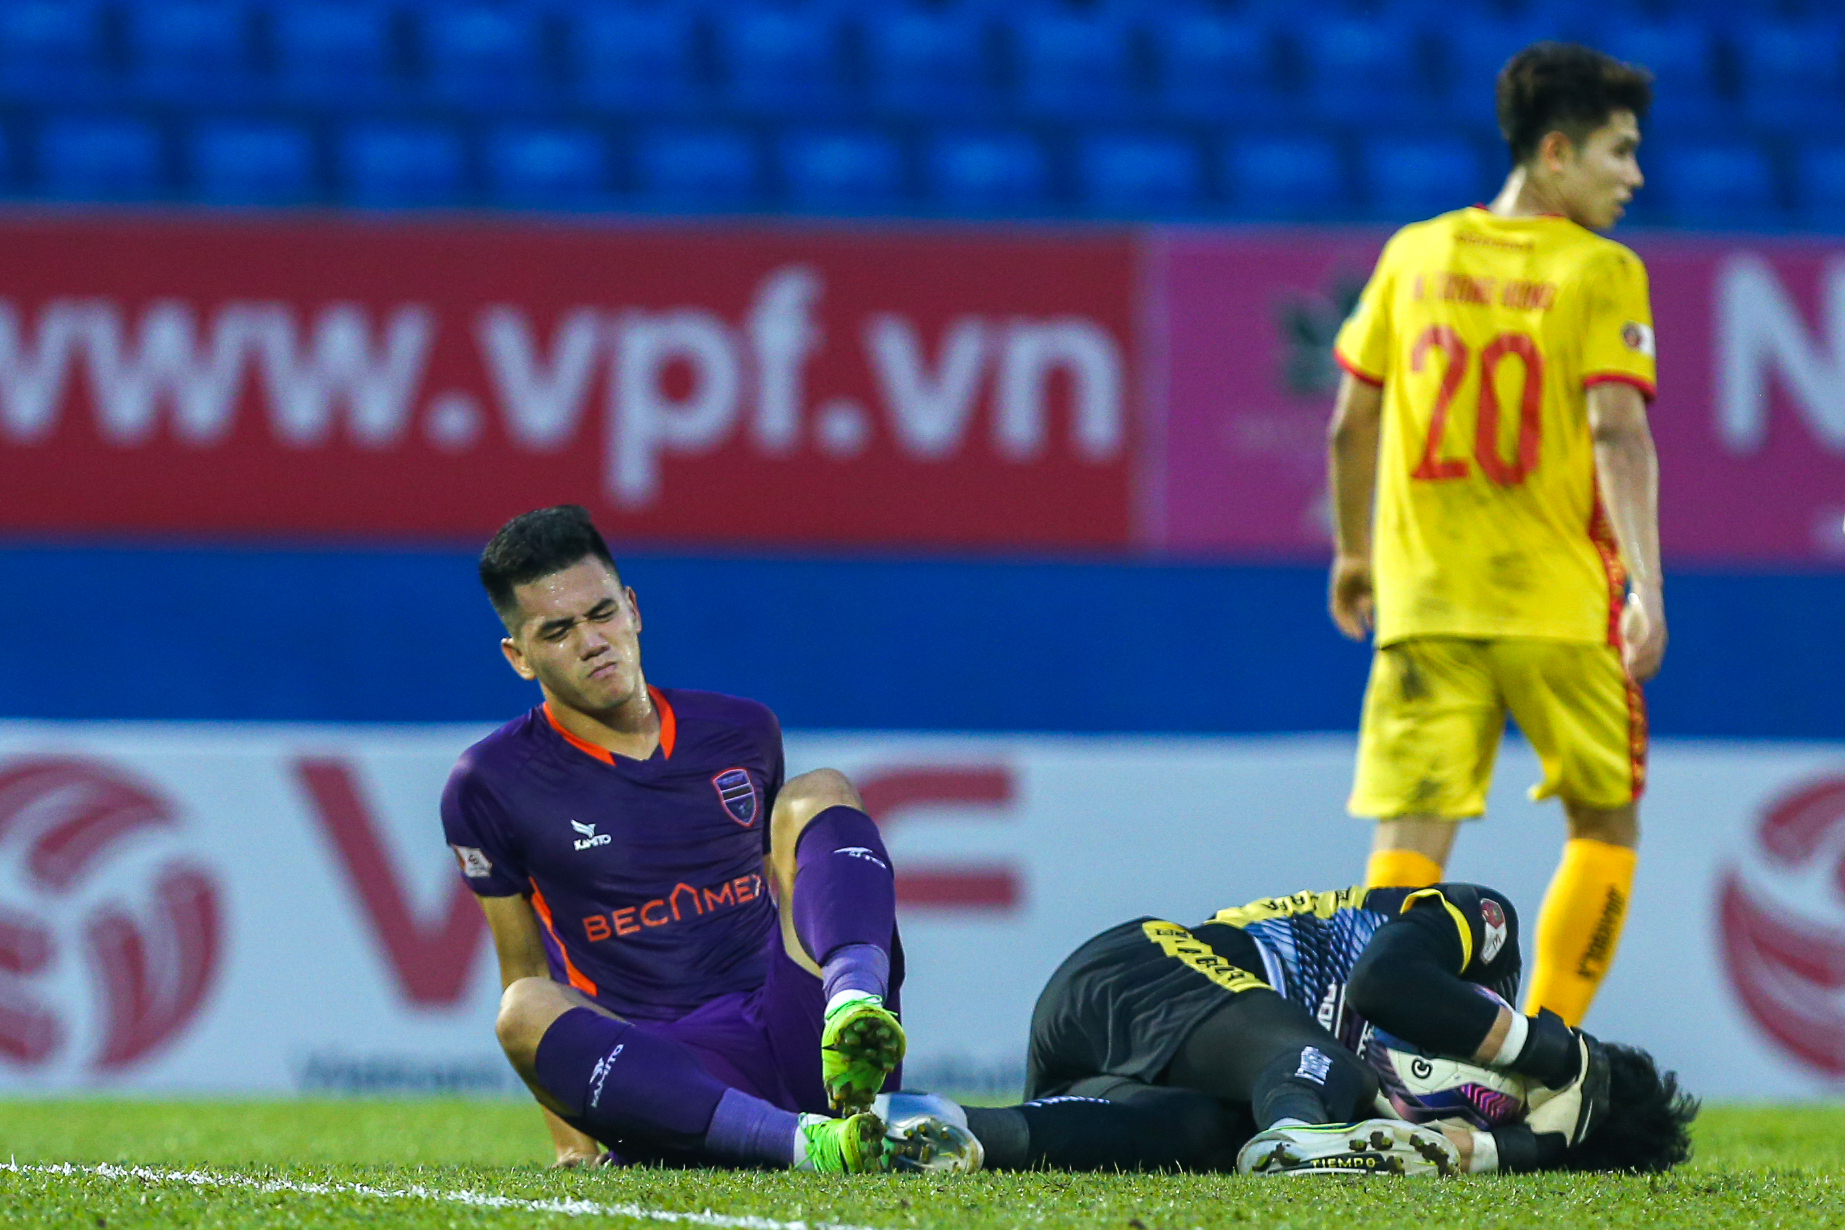 CLB Thanh Hóa: Tuyển thủ U23 Việt Nam dính chấn thương, khiến đội nhà thua trận - Ảnh 2.